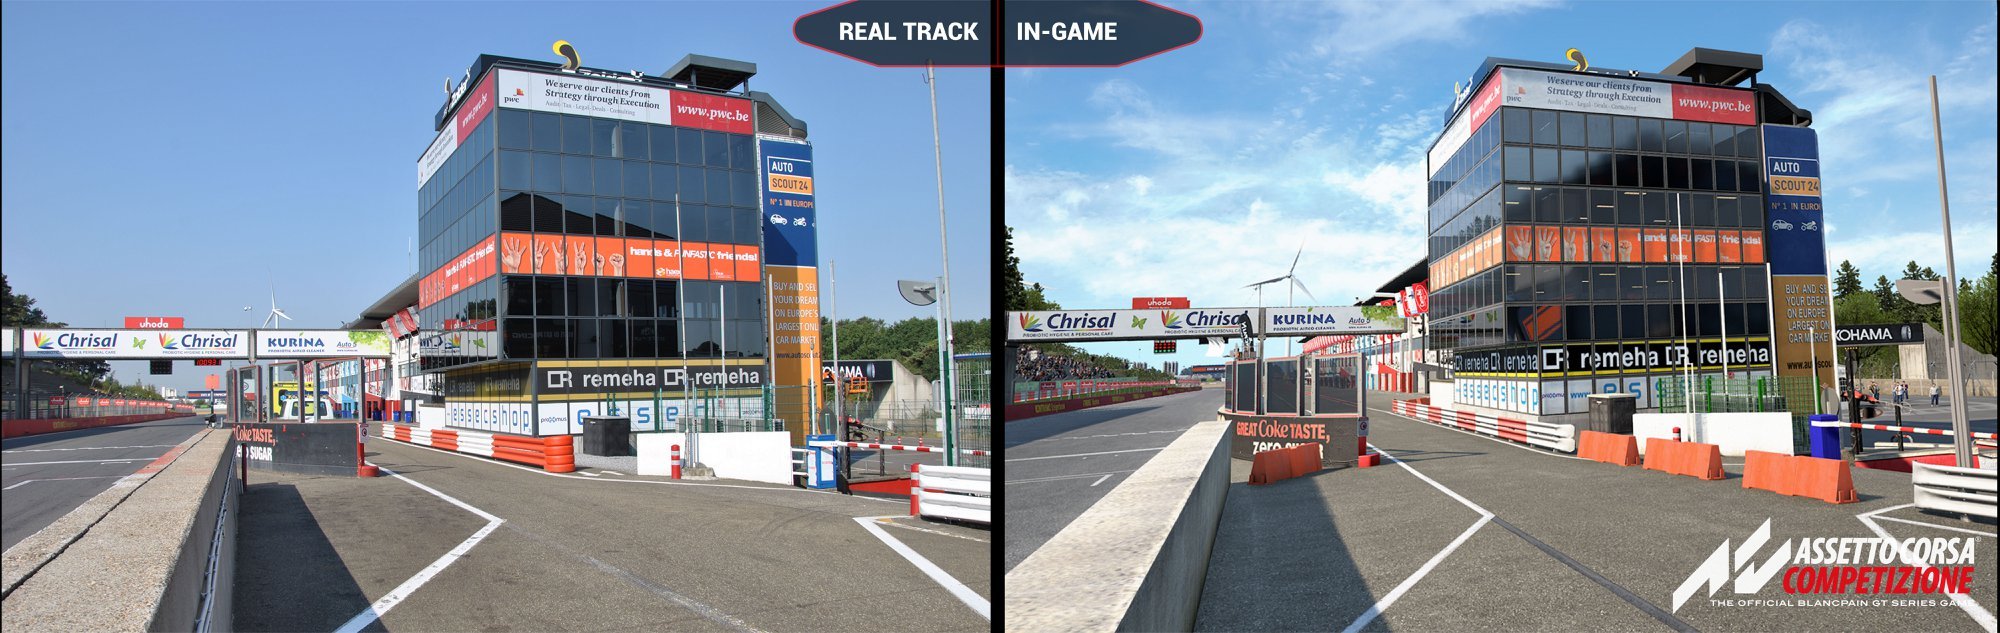 More information about "Assetto Corsa Competizione: prime immagini da Zolder di confronto con la realtà del circuito"